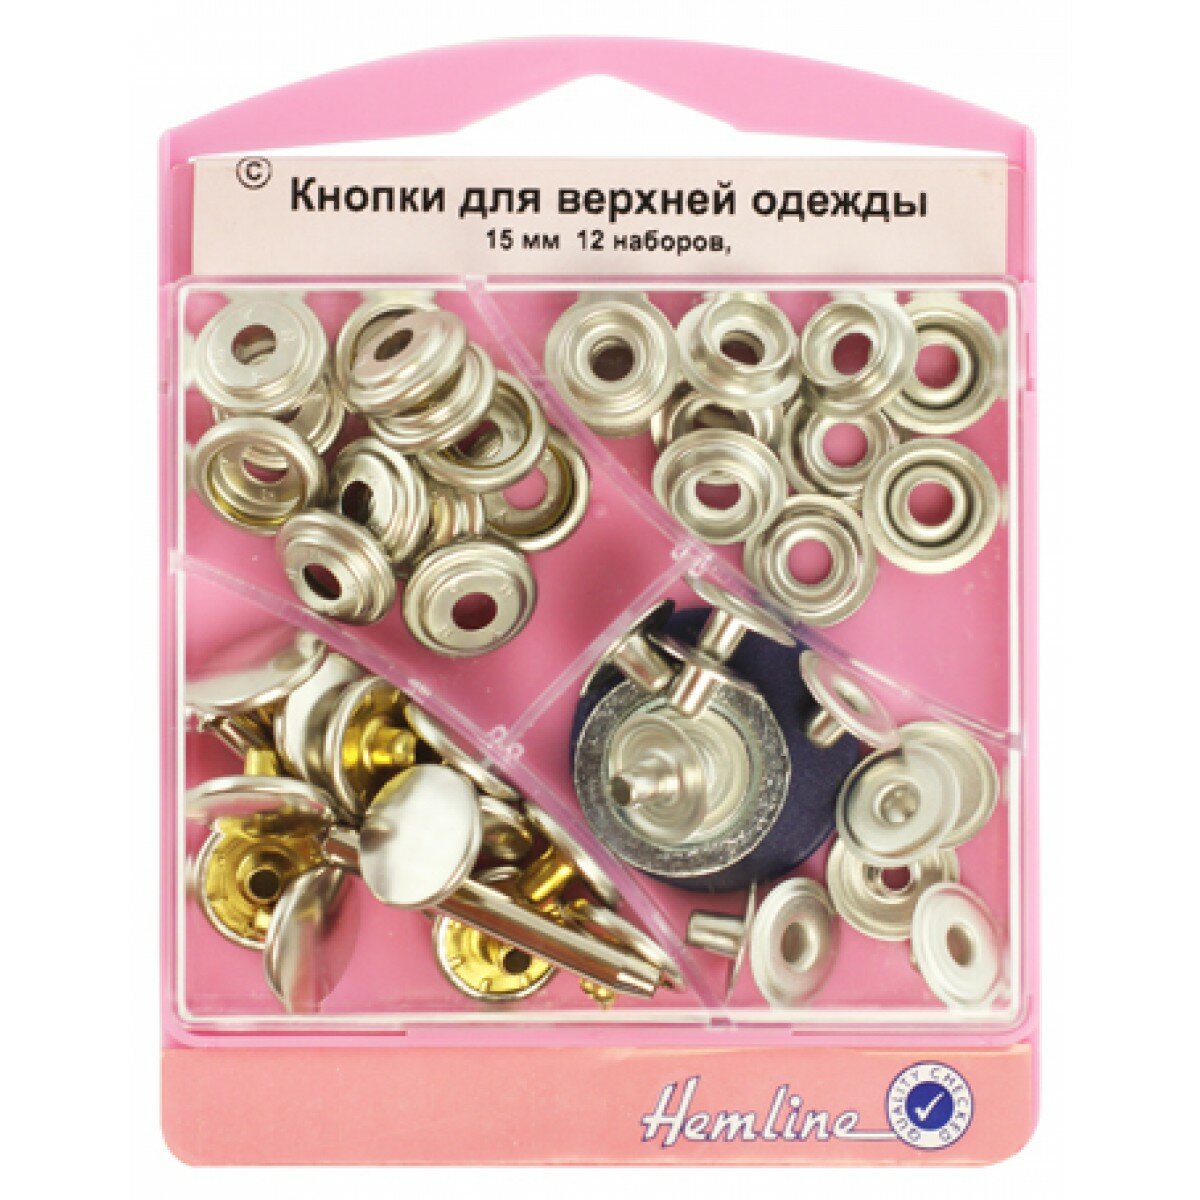 Кнопки для верхней одежды с инструментом для установки латунь, с покрытием под ржавчину 15 мм HEMLINE 405S. N